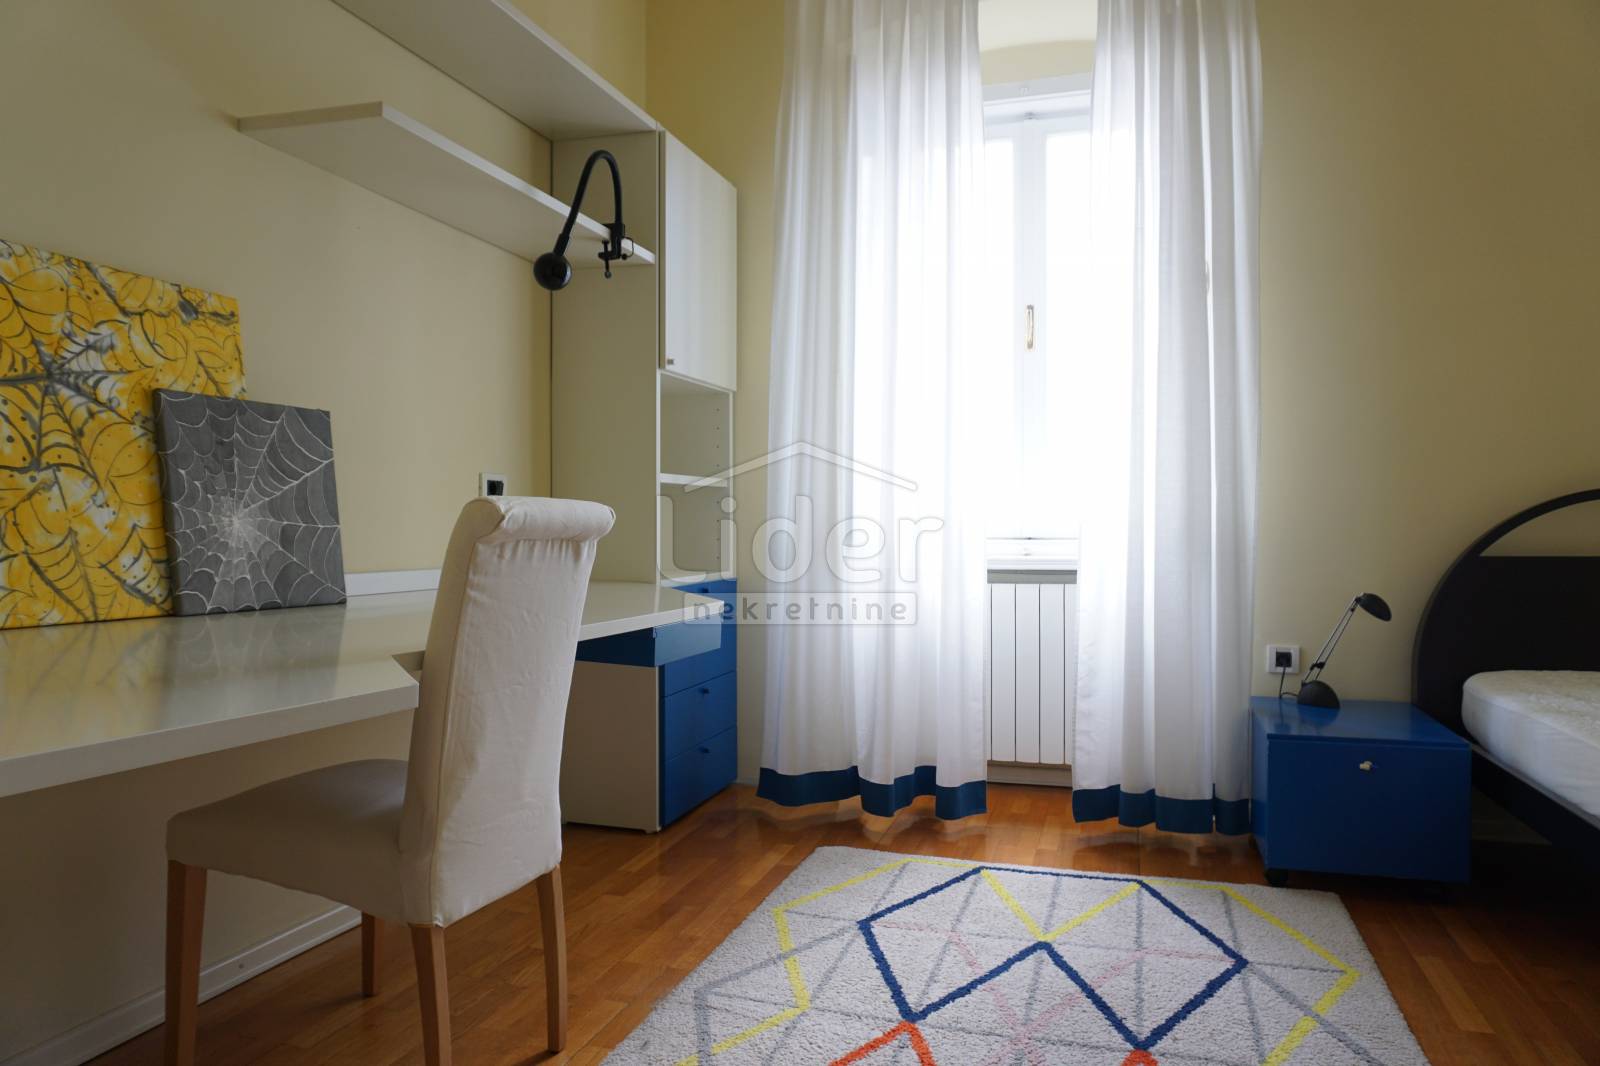 3 rooms, Apartment, 100m², 1 Floor